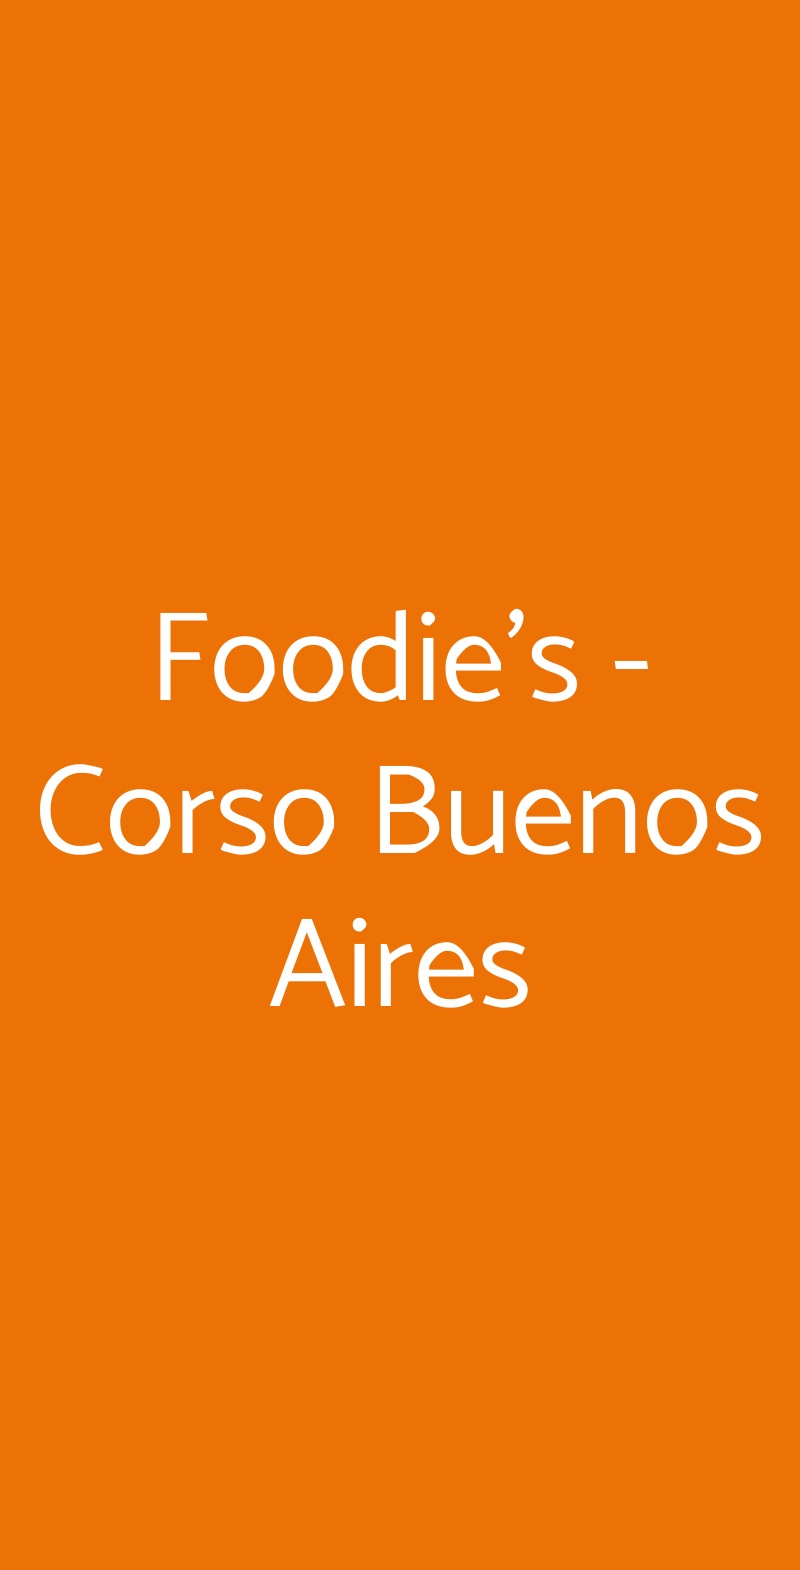 Foodie's - Corso Buenos Aires Milano menù 1 pagina